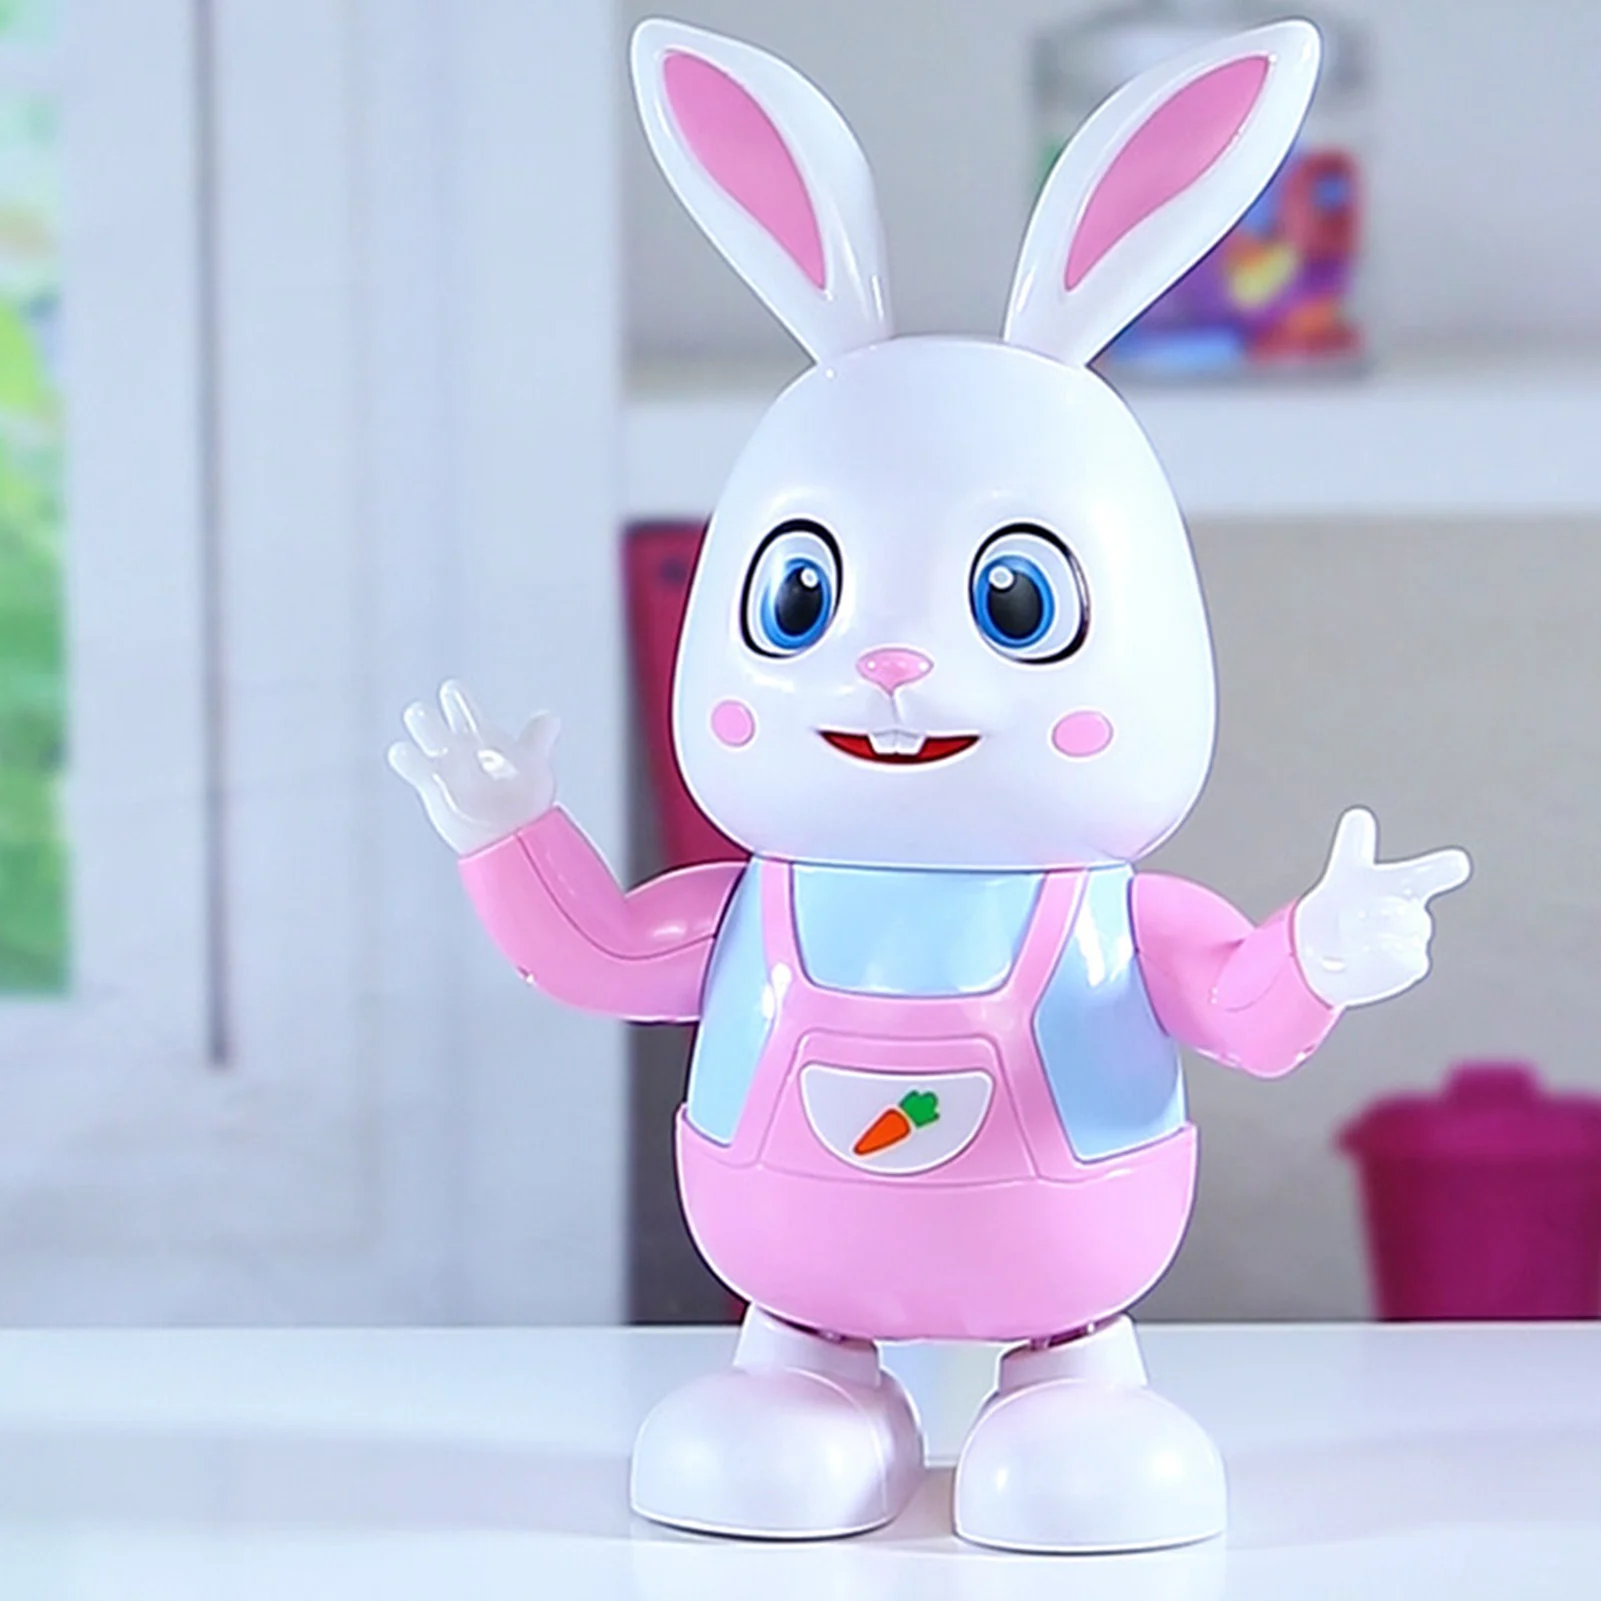 Elektryczne muzyczne zabawka króliczek do tańca wczesna edukacja oświetlenie dla dzieci interaktywna zabawka dla dzieci świąteczny prezent urodzinowy na Wielkanoc